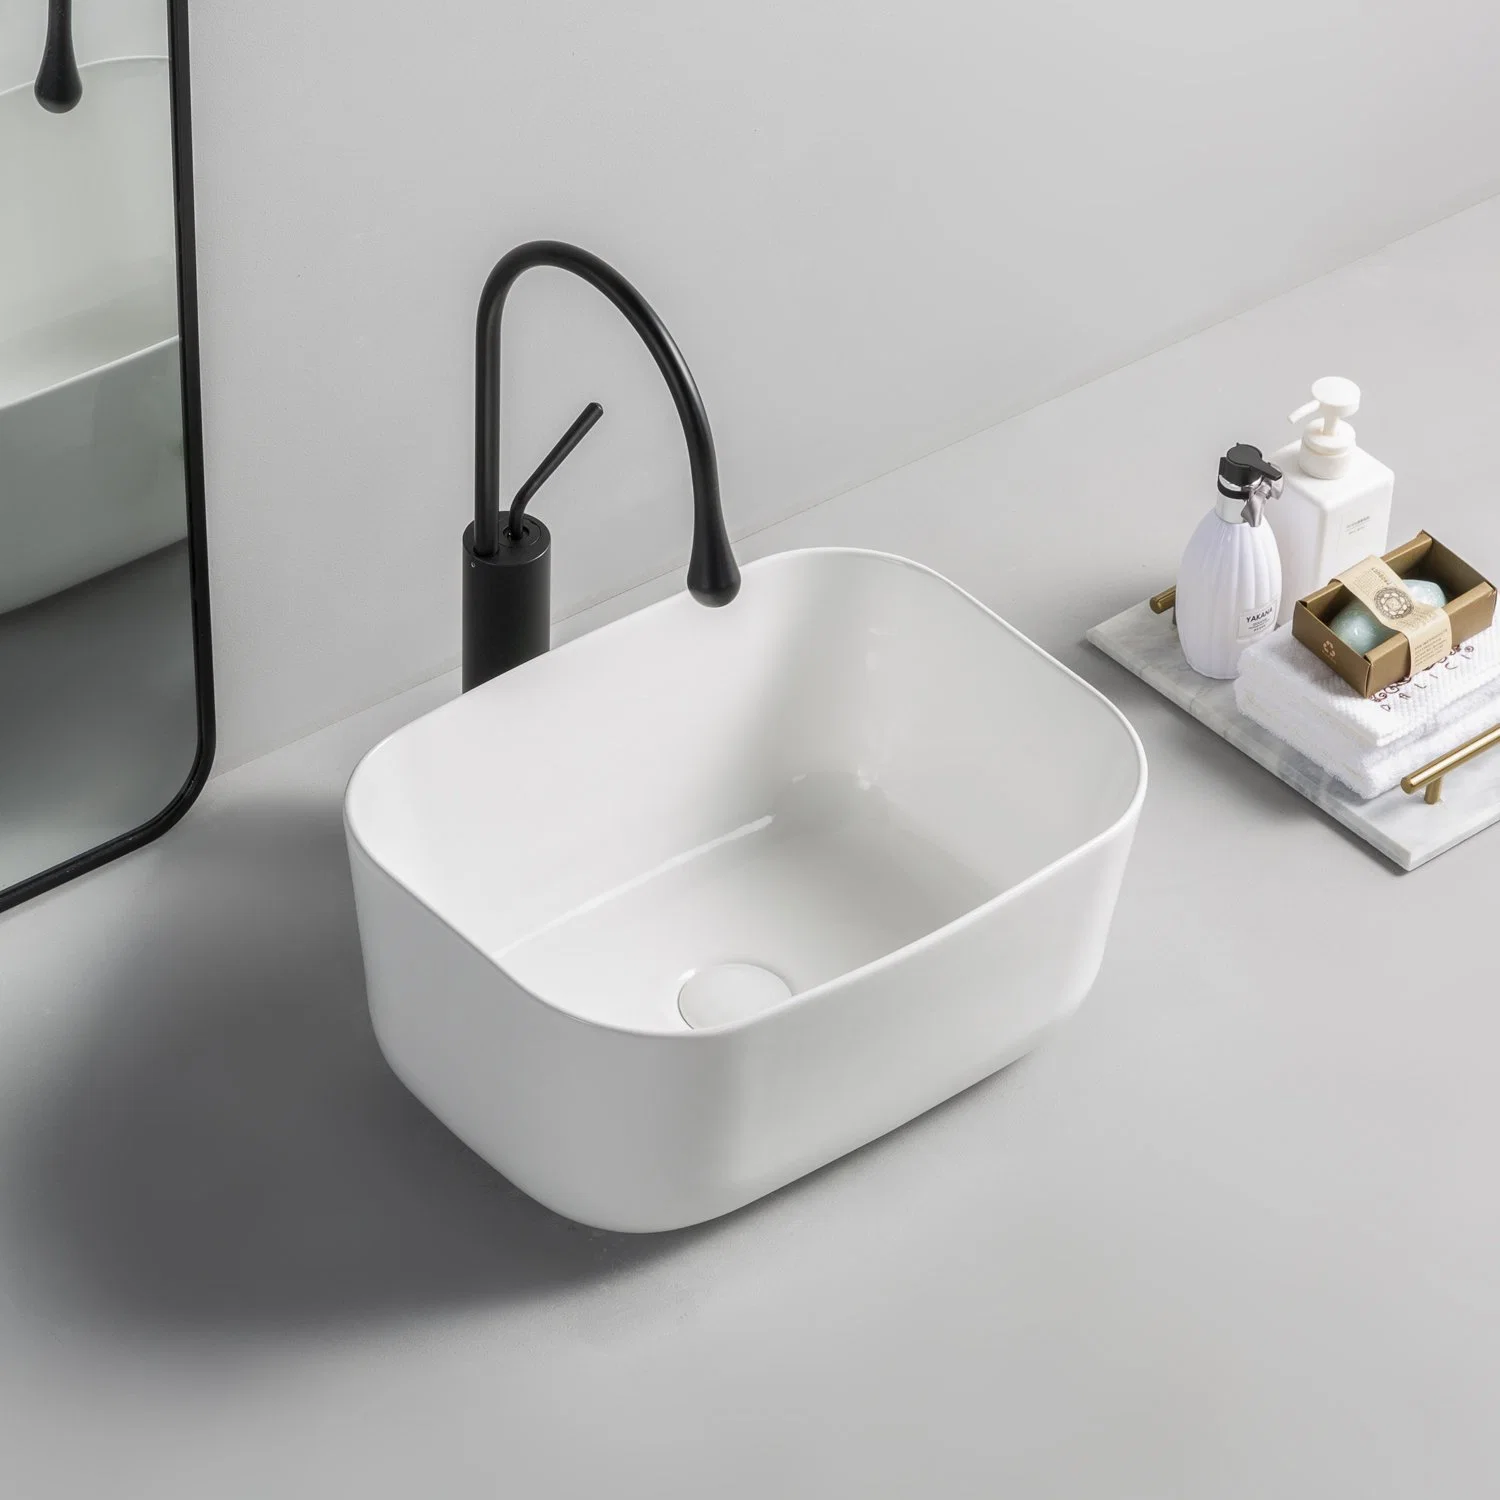 Lavabo en céramique rectangulaire de salle de bains sur table pour articles sanitaires